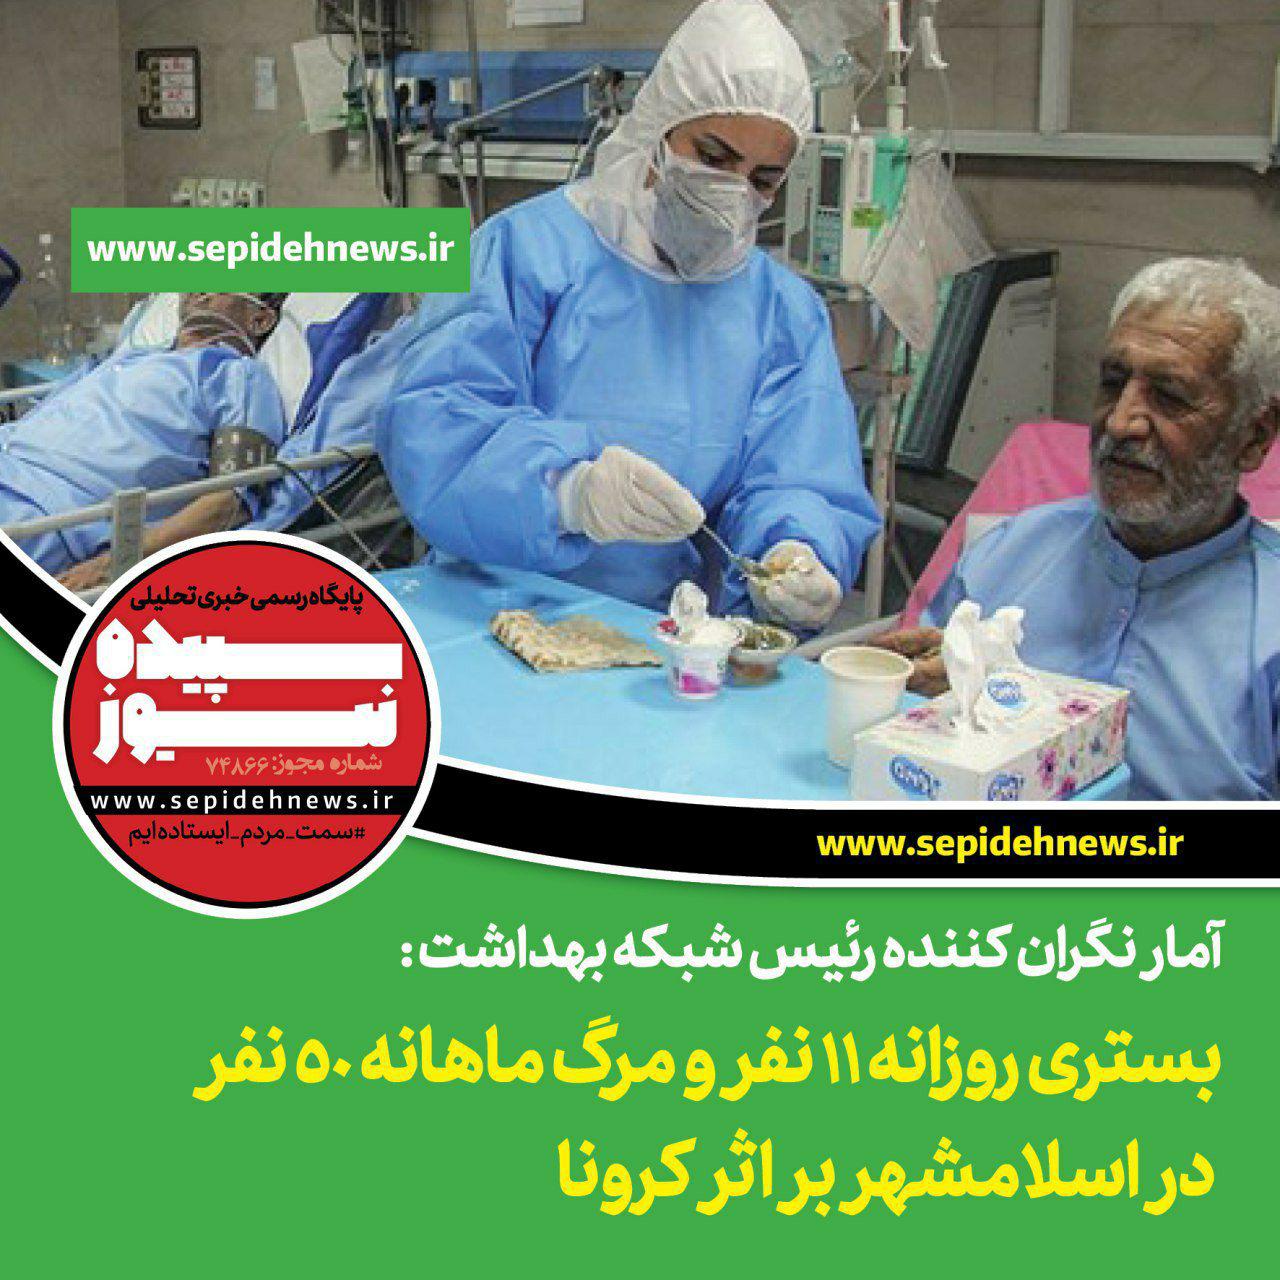 آمار نگران کننده رئیس شبکه بهداشت : بستری روزانه 11 نفر و مرگ ماهانه 50 نفر در اسلامشهر بر اثر کرونا